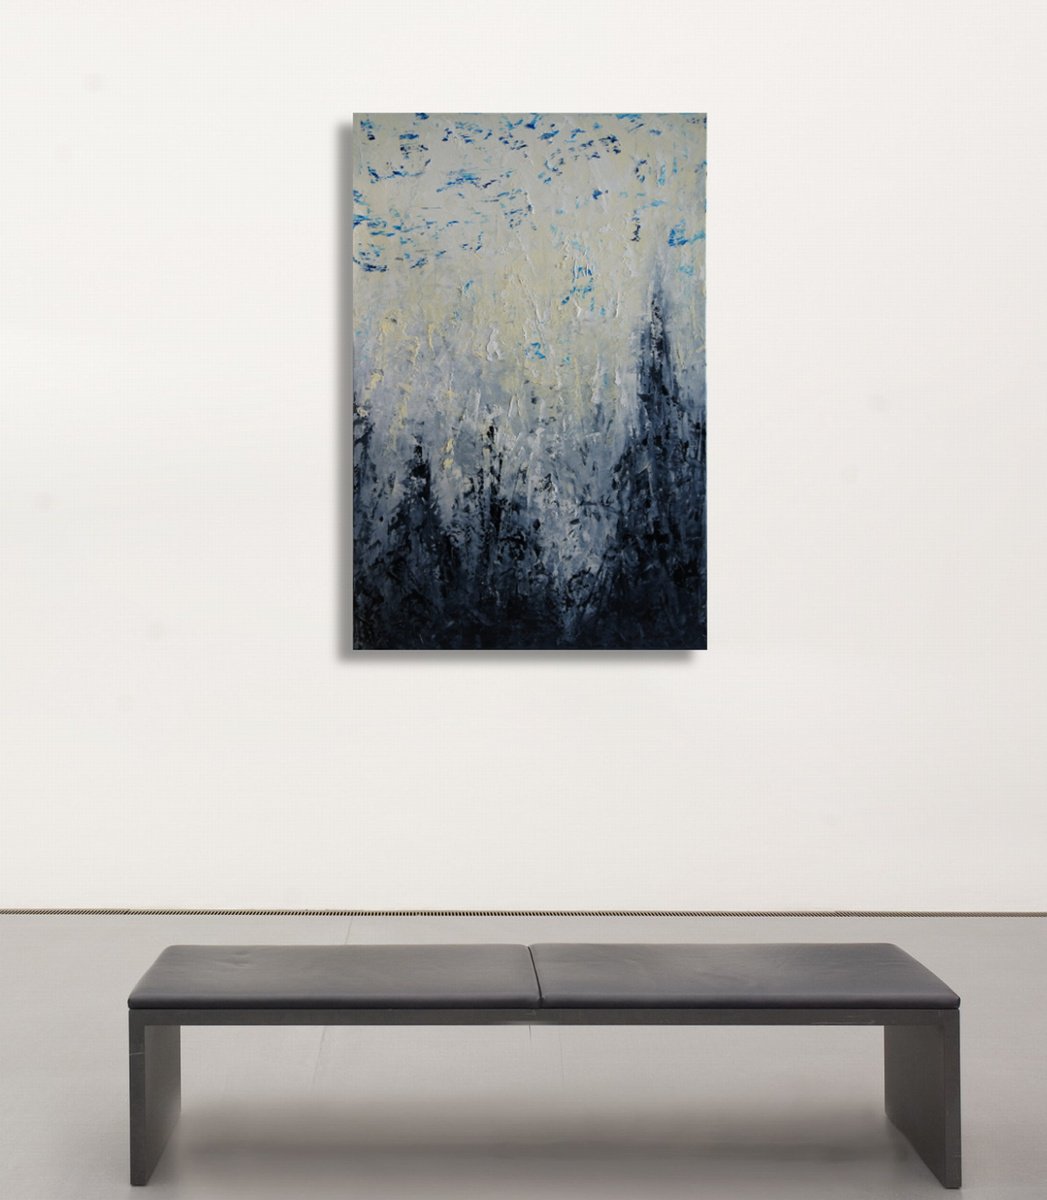 Misty Morning II (90 x 60 cm) XL (36 x 24 inches) by Ansgar Dressler